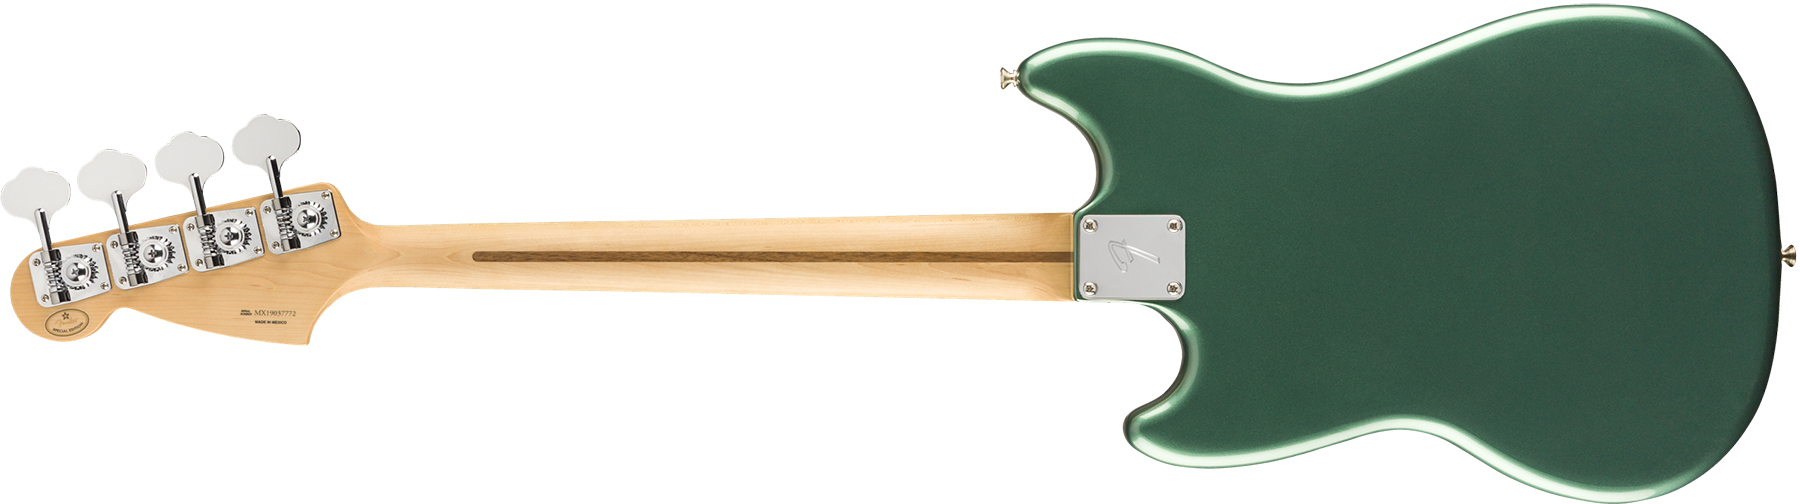 Fender Mustang Bass Pj Player Ltd Mex Pf - Sherwood Green Metallic - E-Bass für Kinder - Variation 1